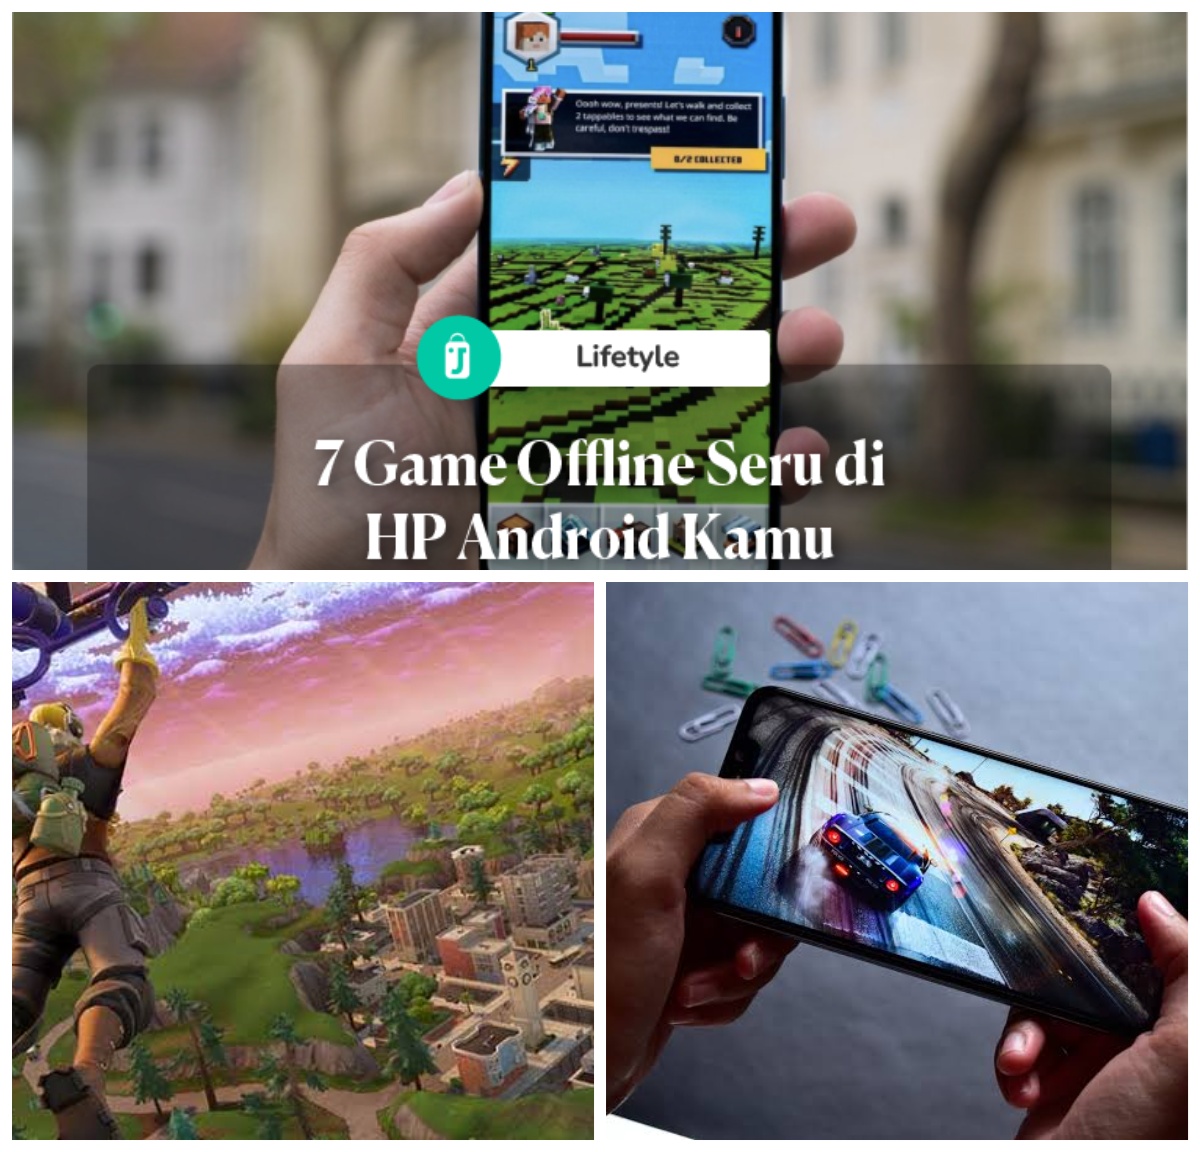 HPmu Android? Inilah 7 Game Seru dan Populer yang Bisa Kamu Mainkan